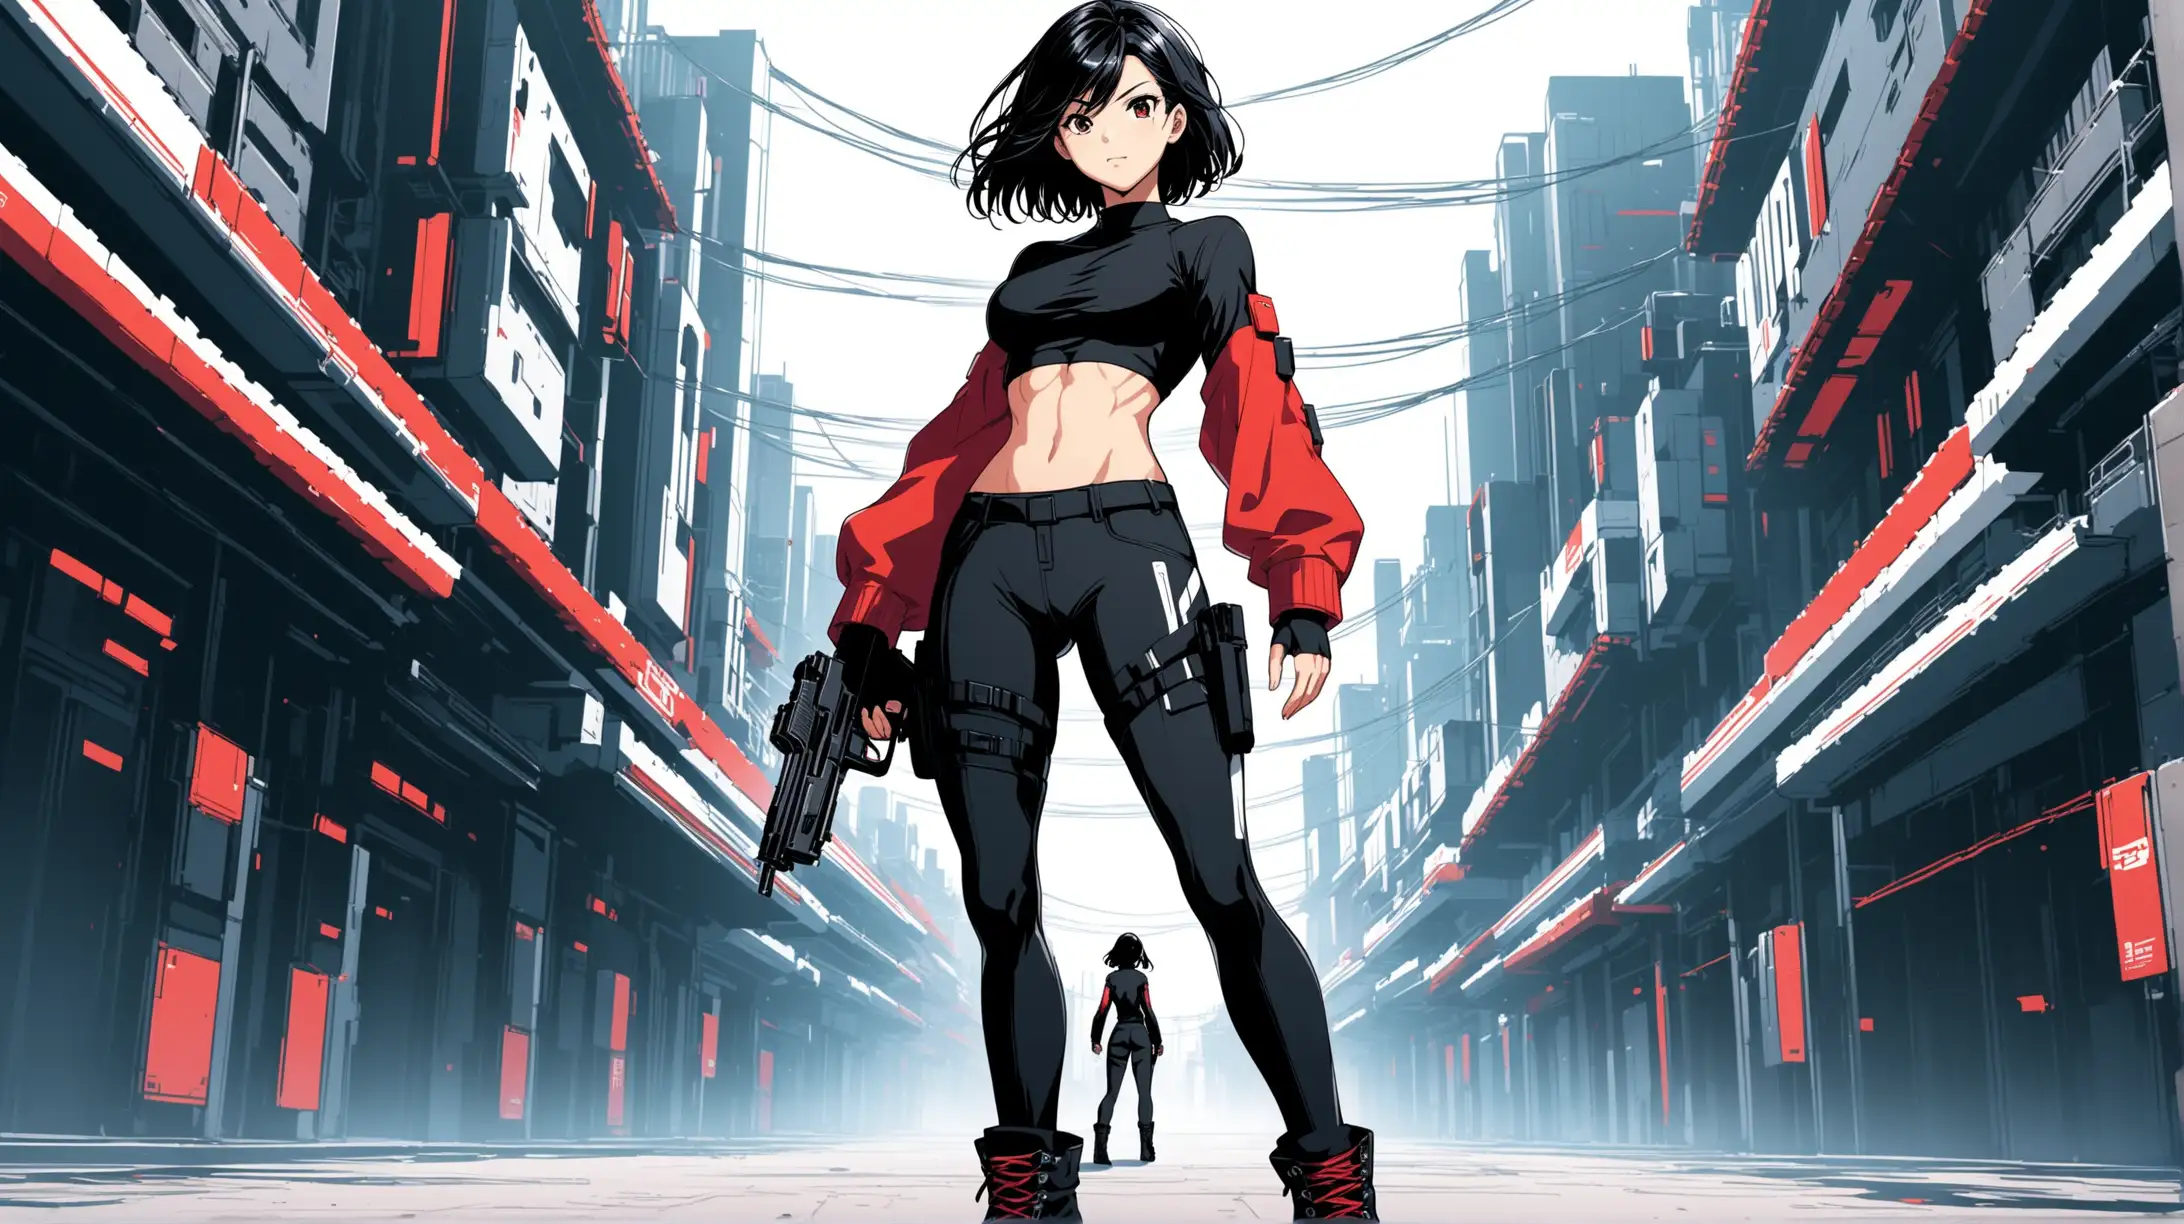 Futuristic Anime Heroine with Dual Handguns in Urban Environment